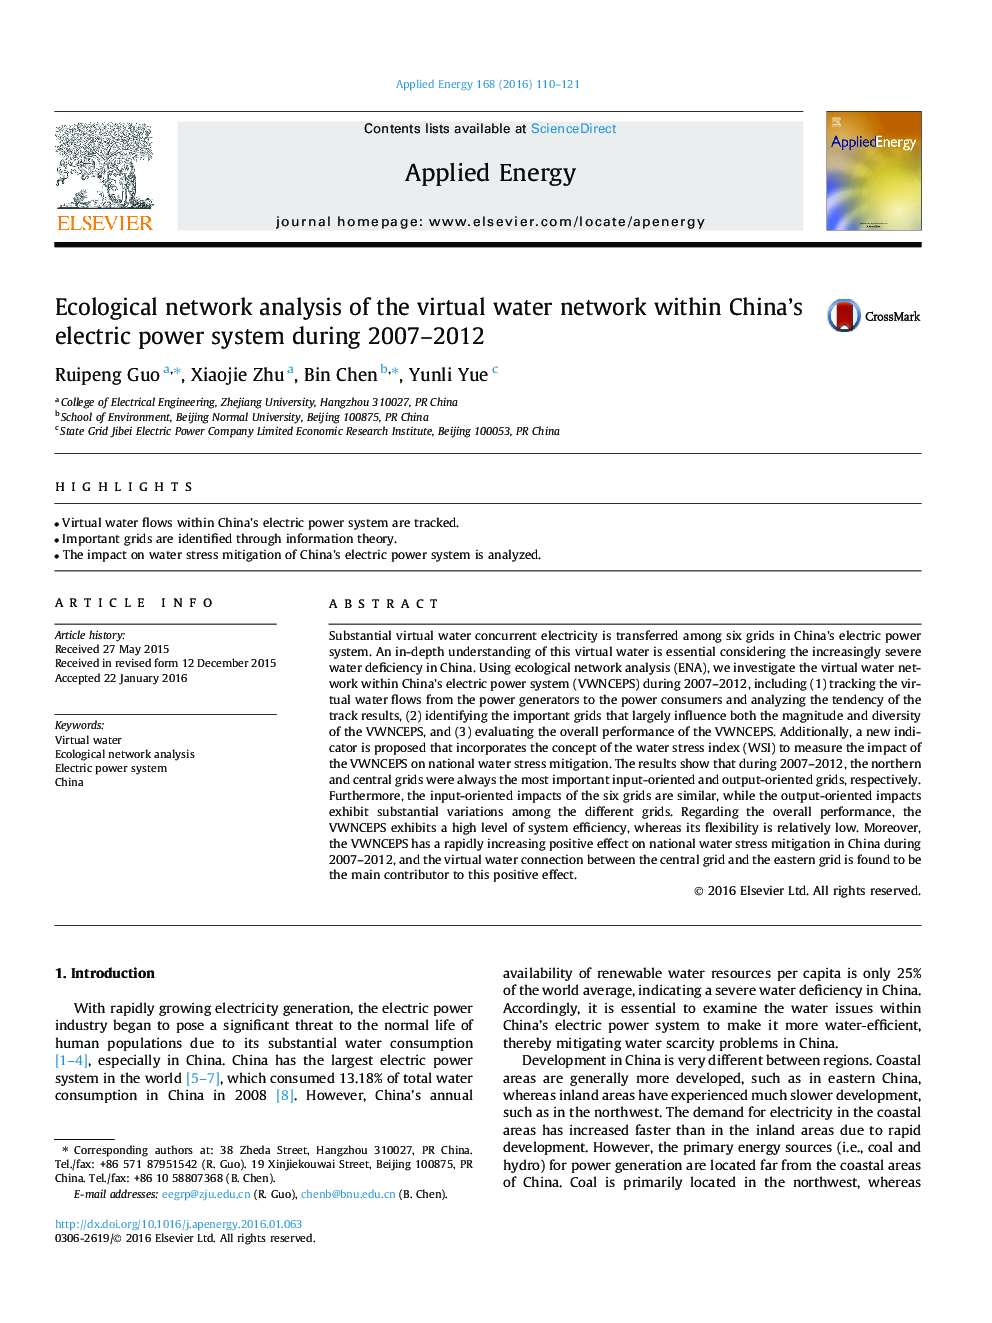 تجزیه و تحلیل شبکه های محیط زیست شبکه آب مجازی در سیستم برق چین طی سال های 2007-2012 